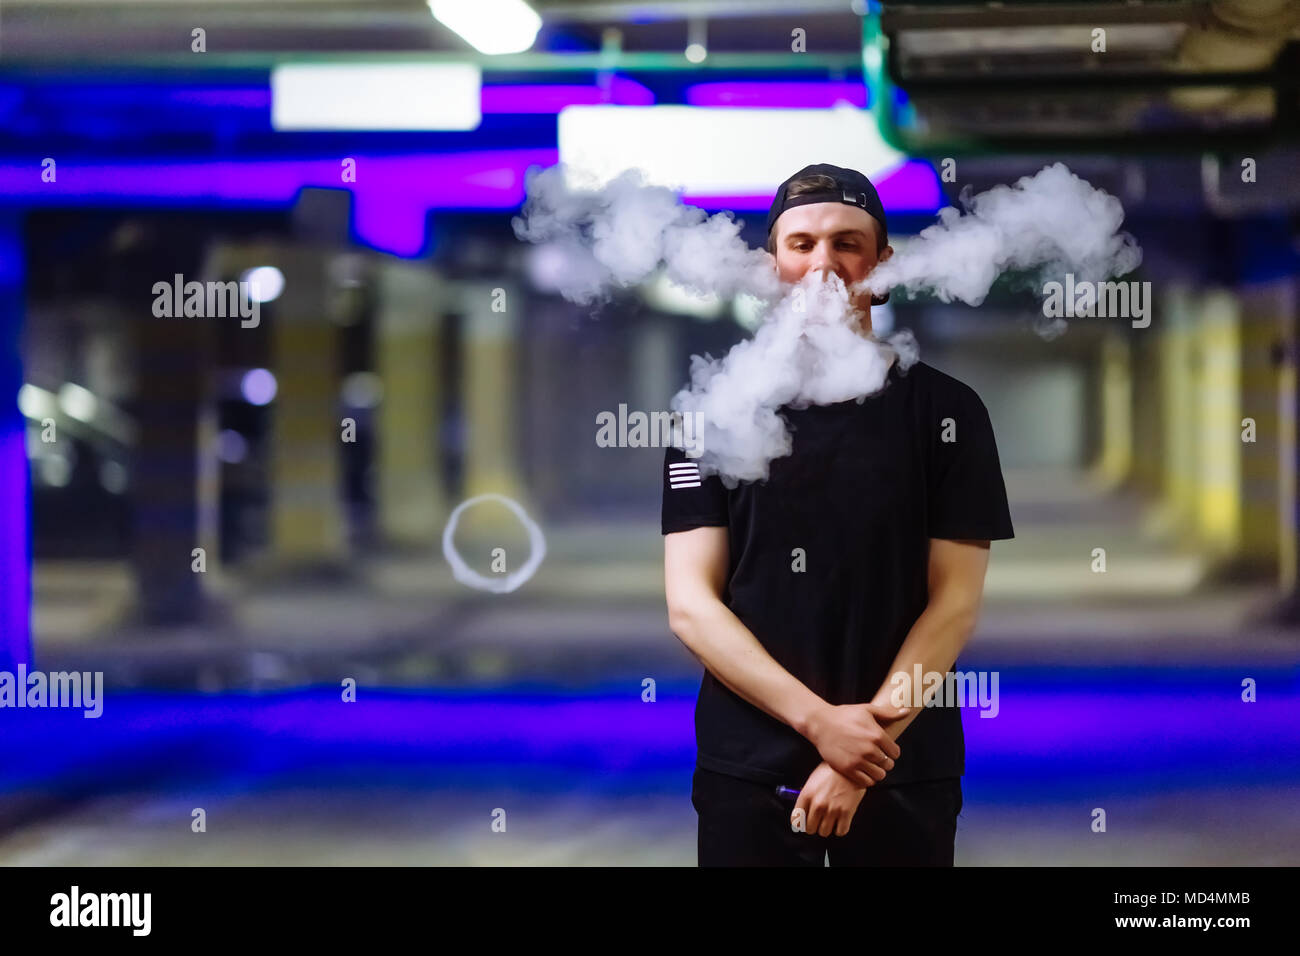 Mann in Gap Rauch eine elektronische Zigarette Ausführen verschiedener Art vaping Tricks Stockfoto